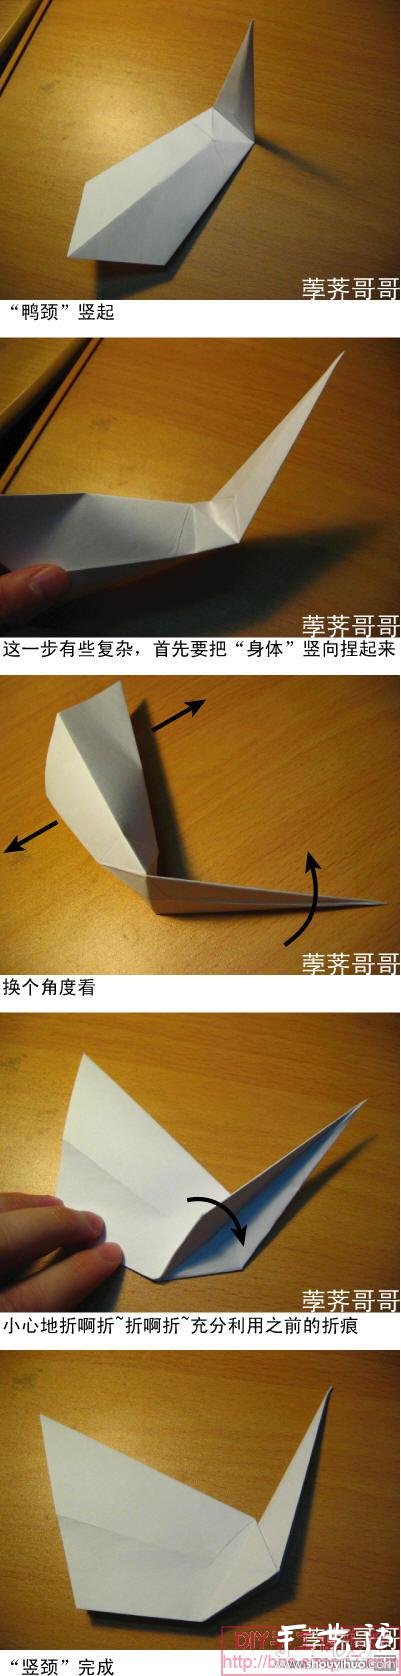 美剧《越狱》里的纸鹤折纸方法